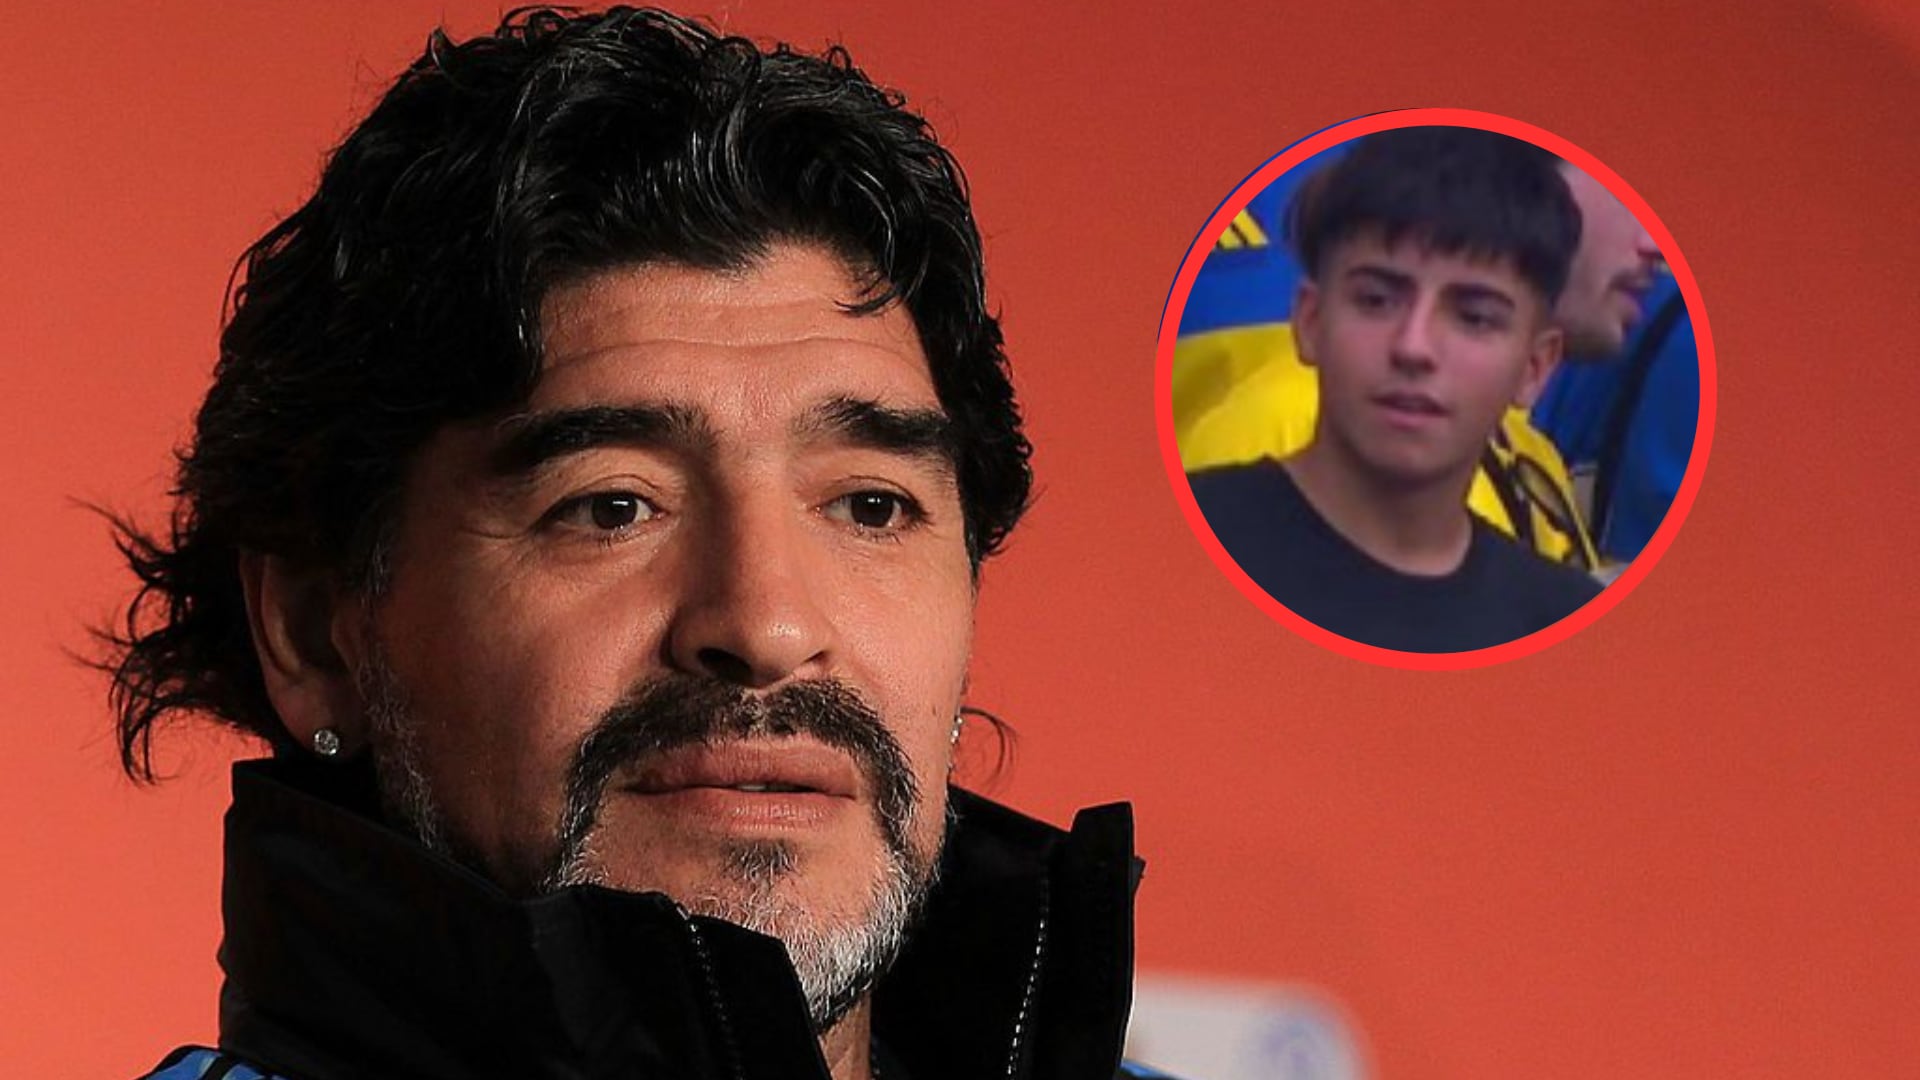 Benjamín Agüero, nieto de Diego Maradona, sorprendió en la final de la Libertadores entre Boca Juniors vs Fluminense